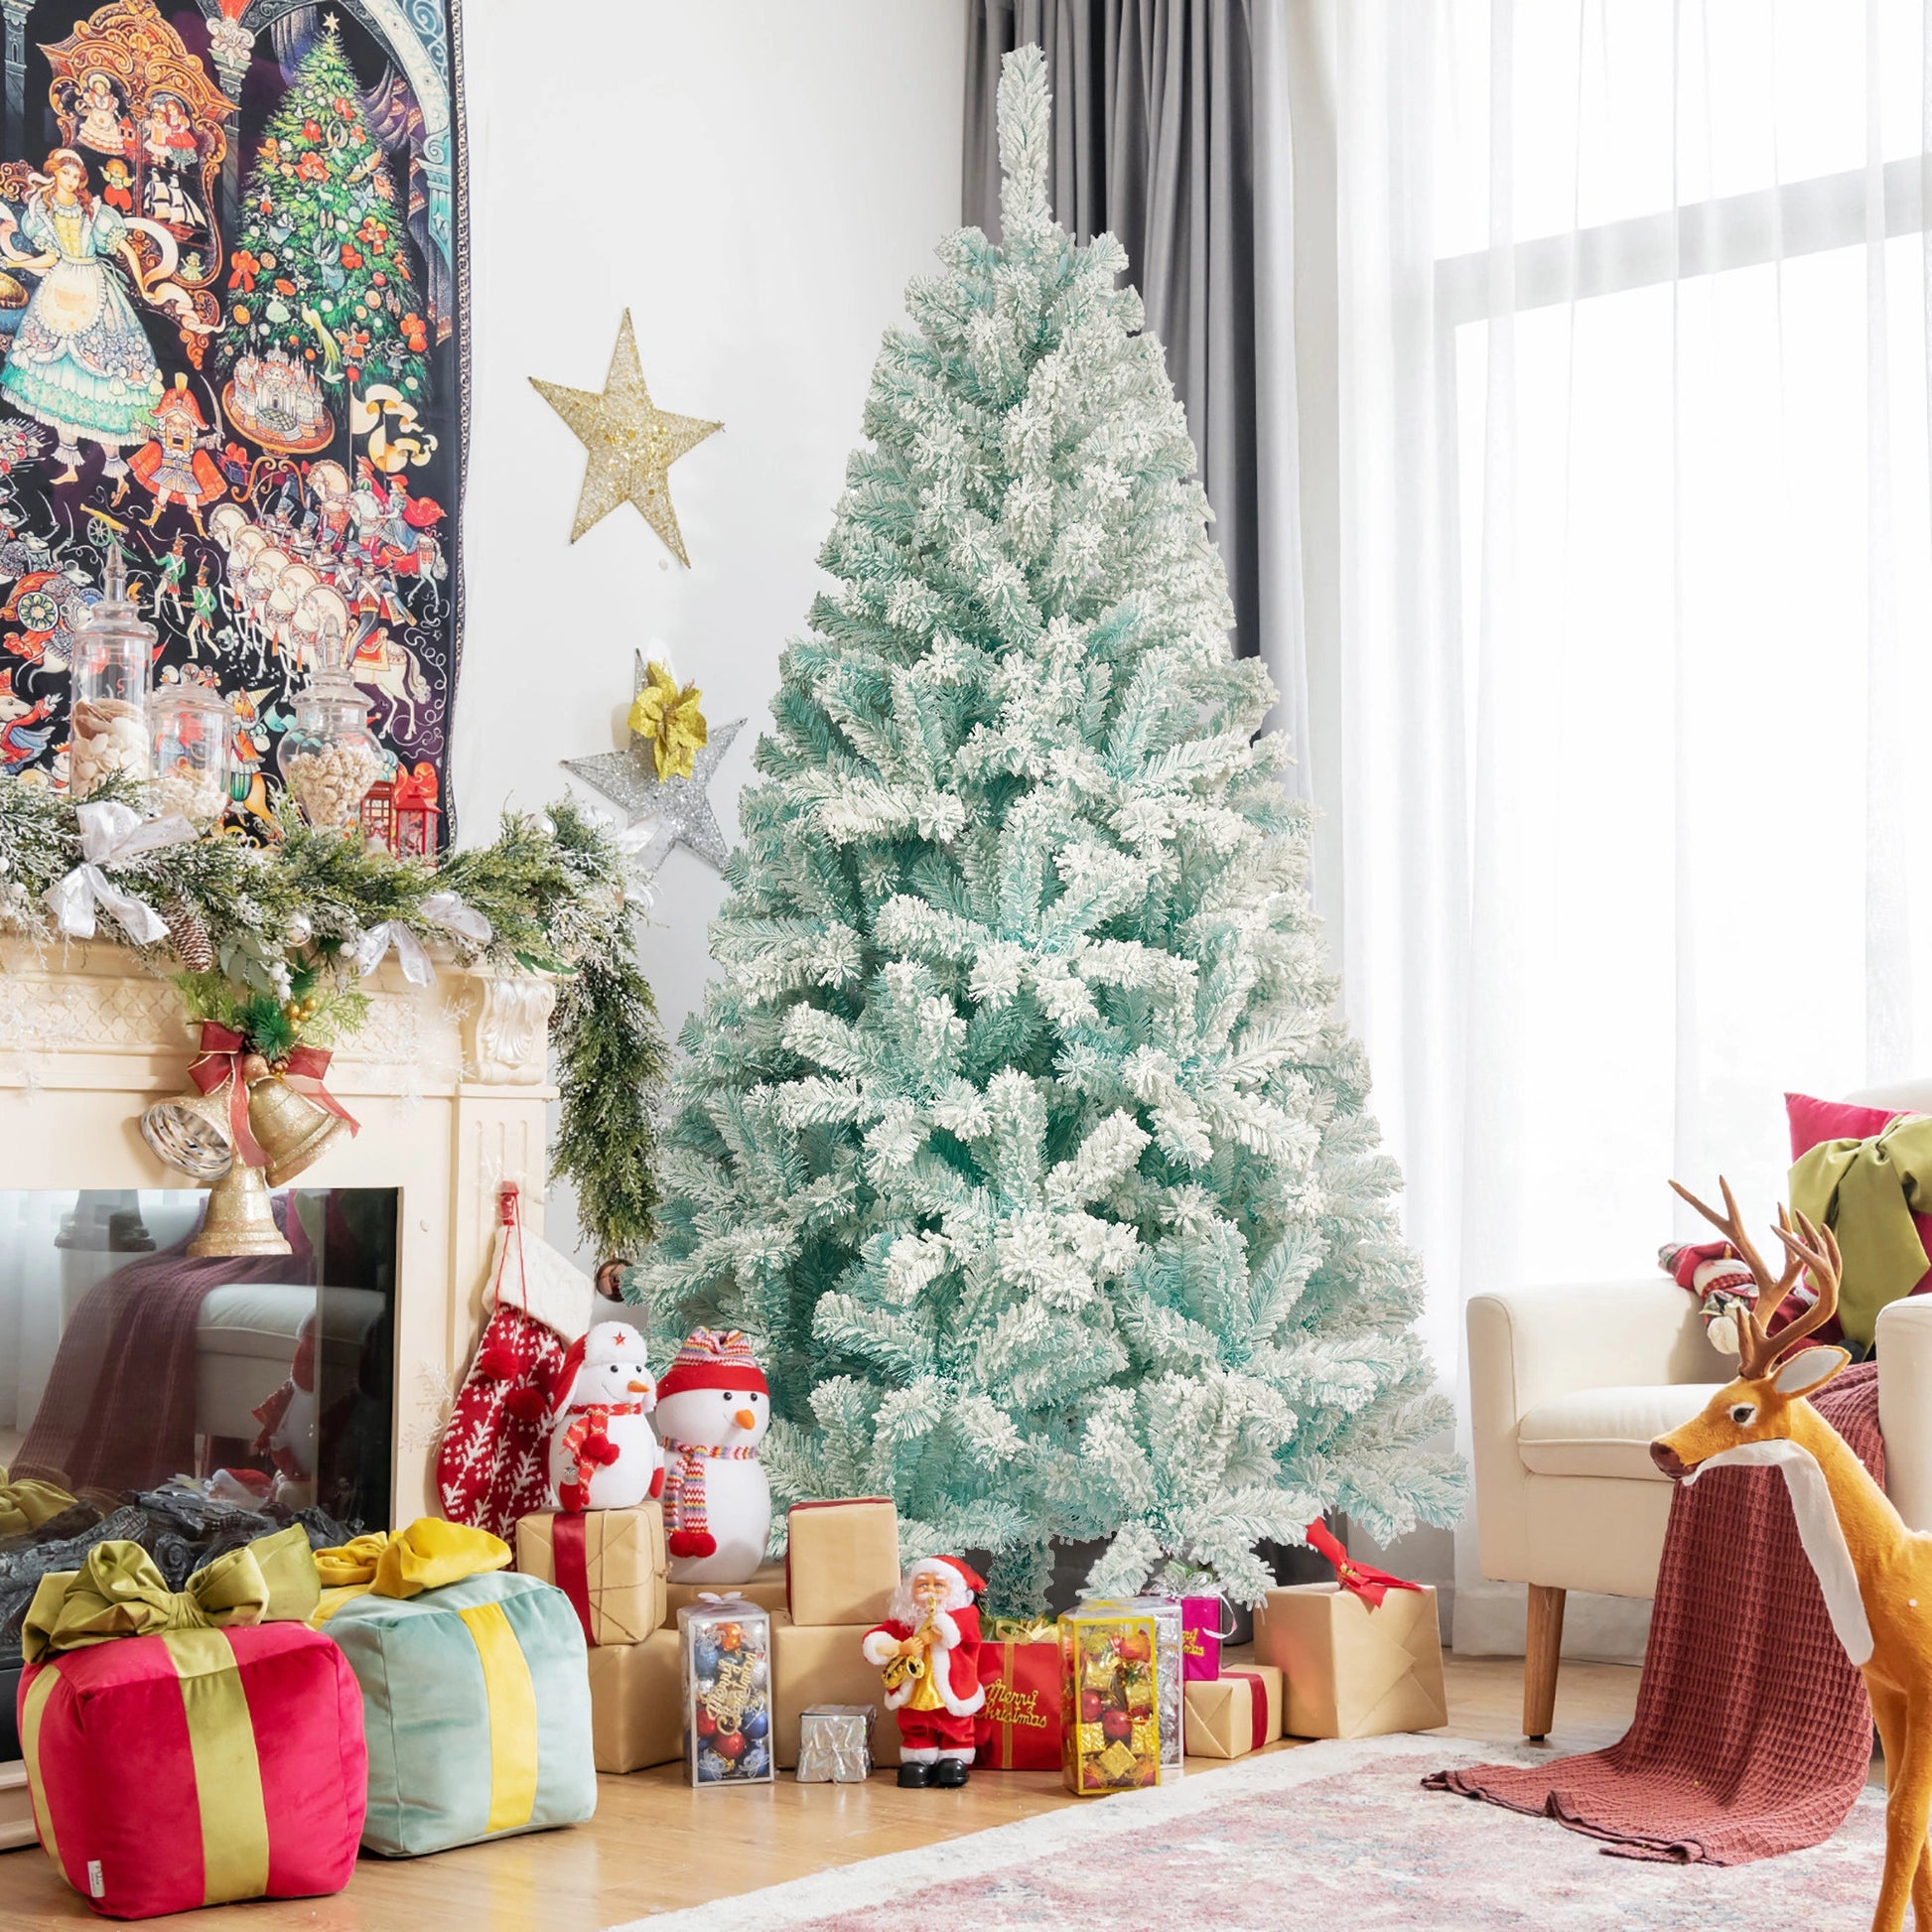 Bra Christmas tree'  Christmas tree, Christmas, Tree